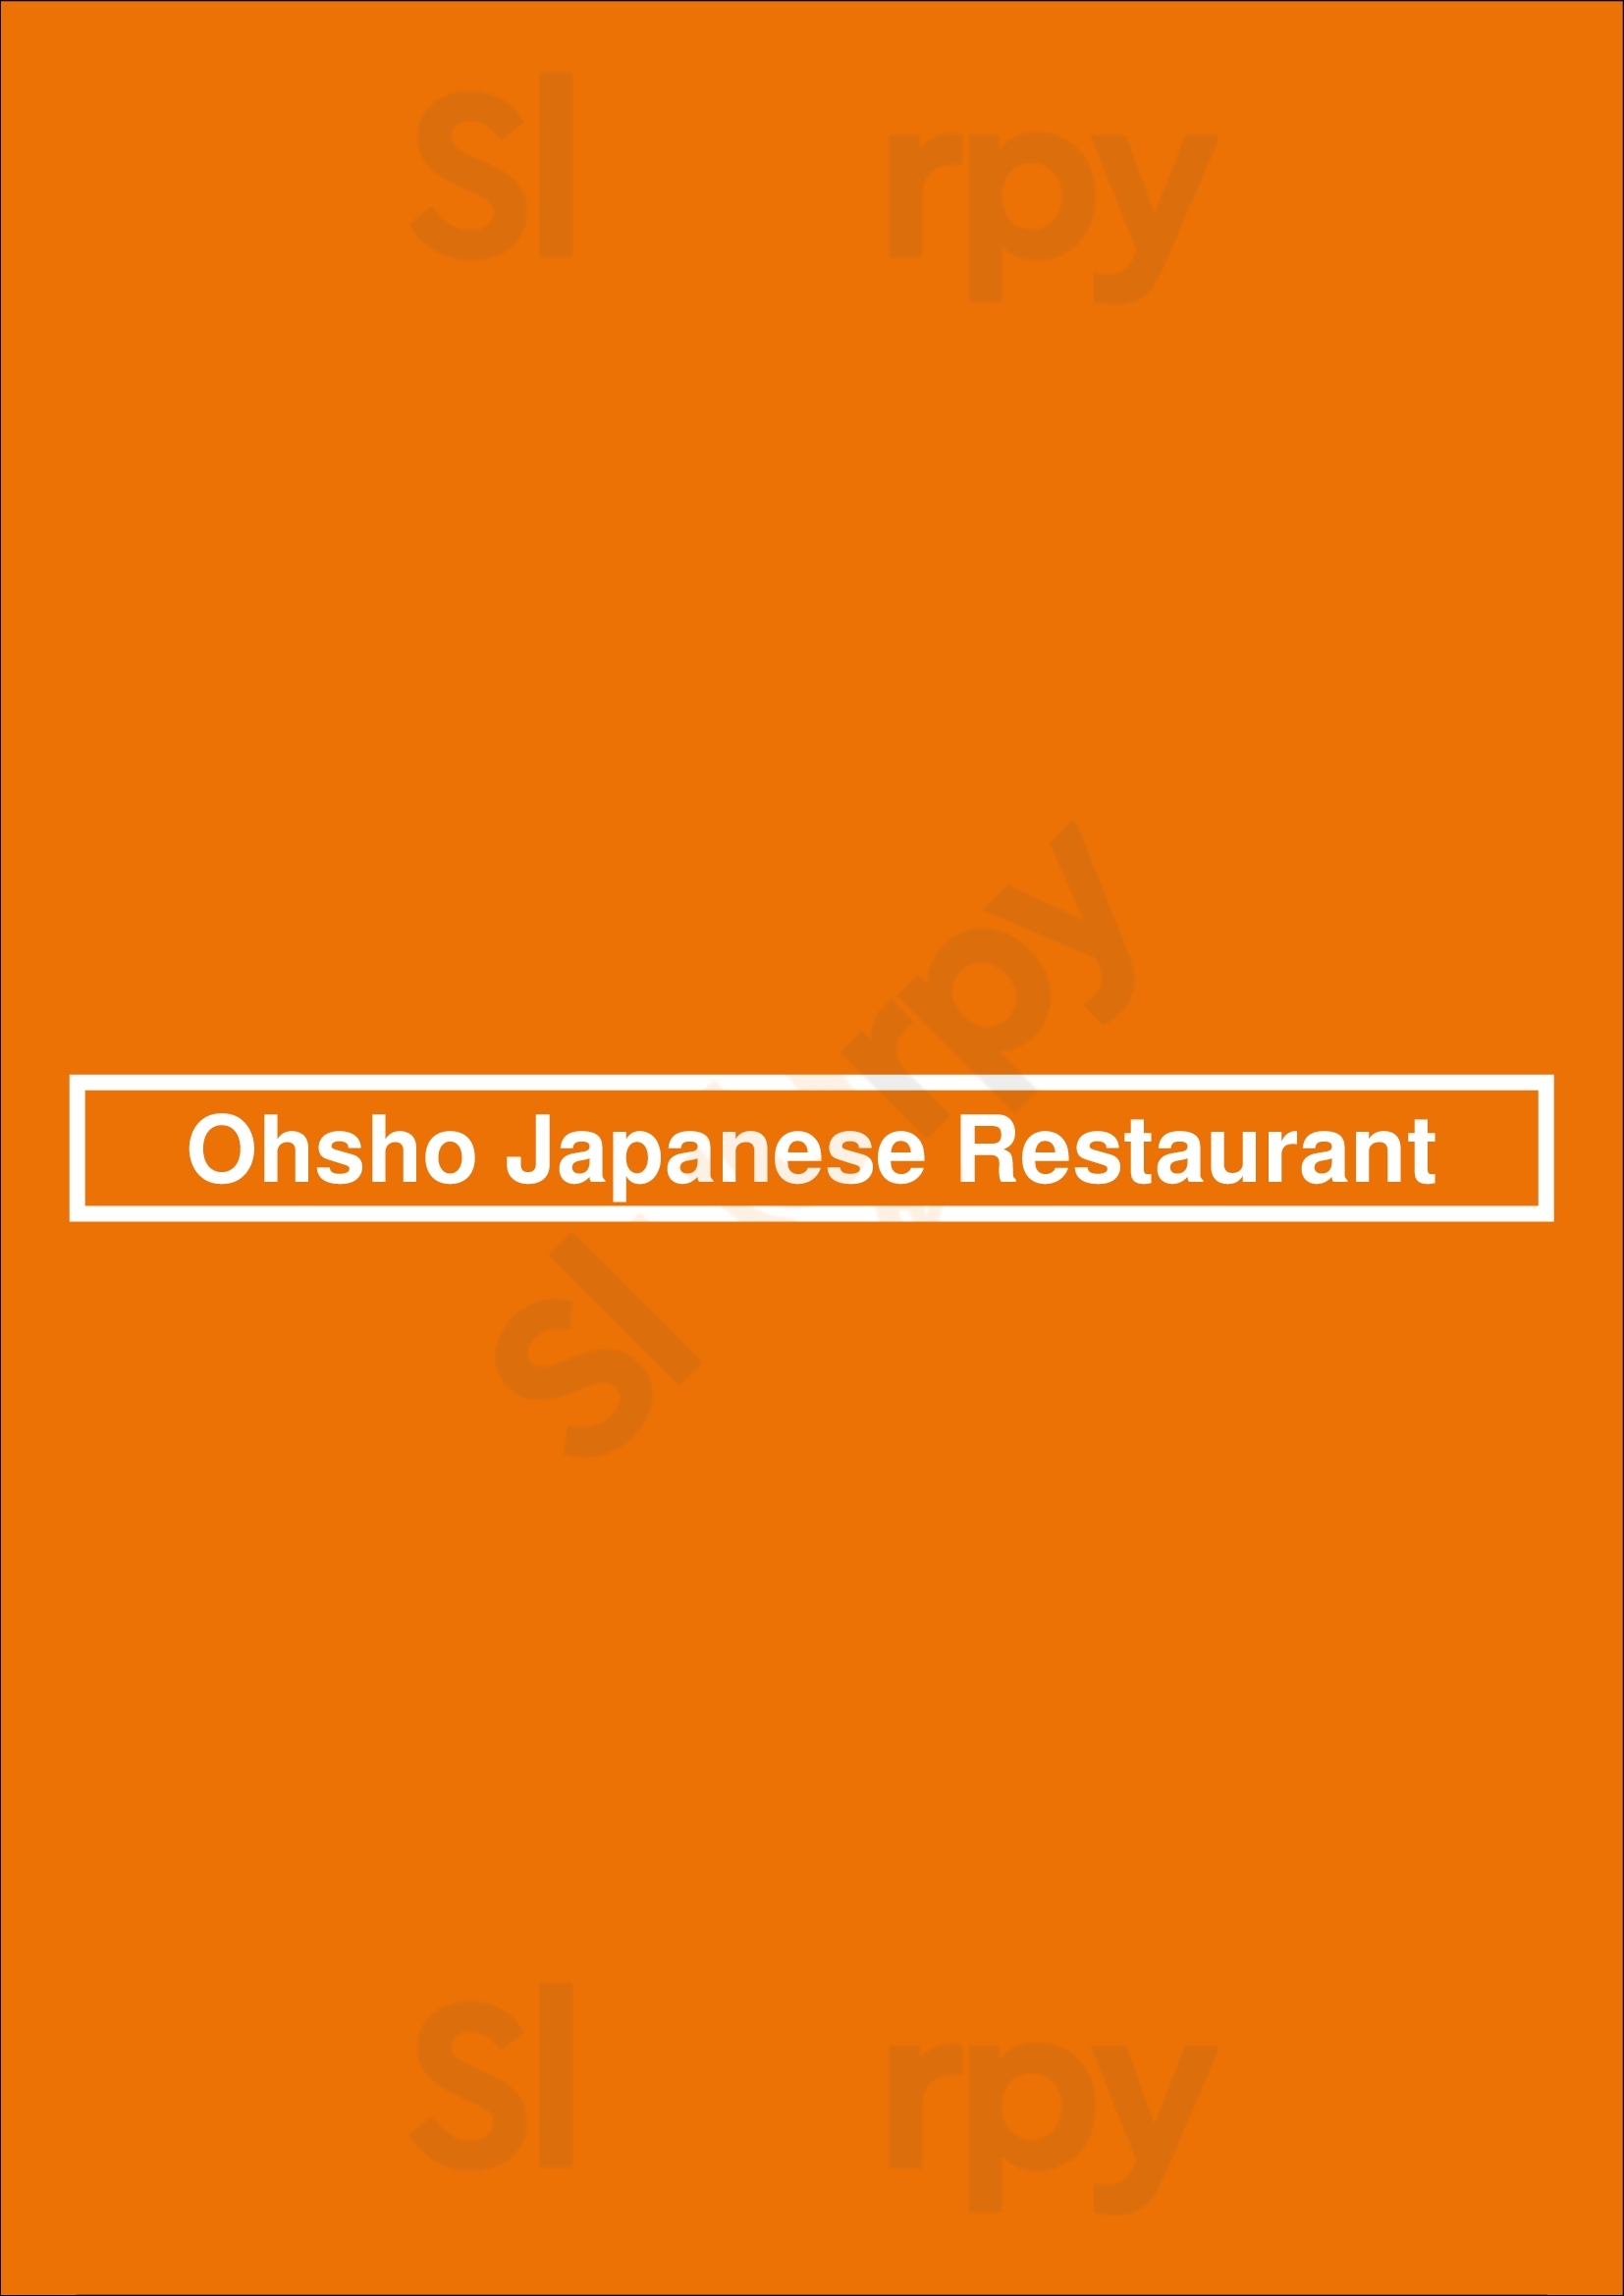 Ohsho Japanese Restaurant Hawthorn Menu - 1